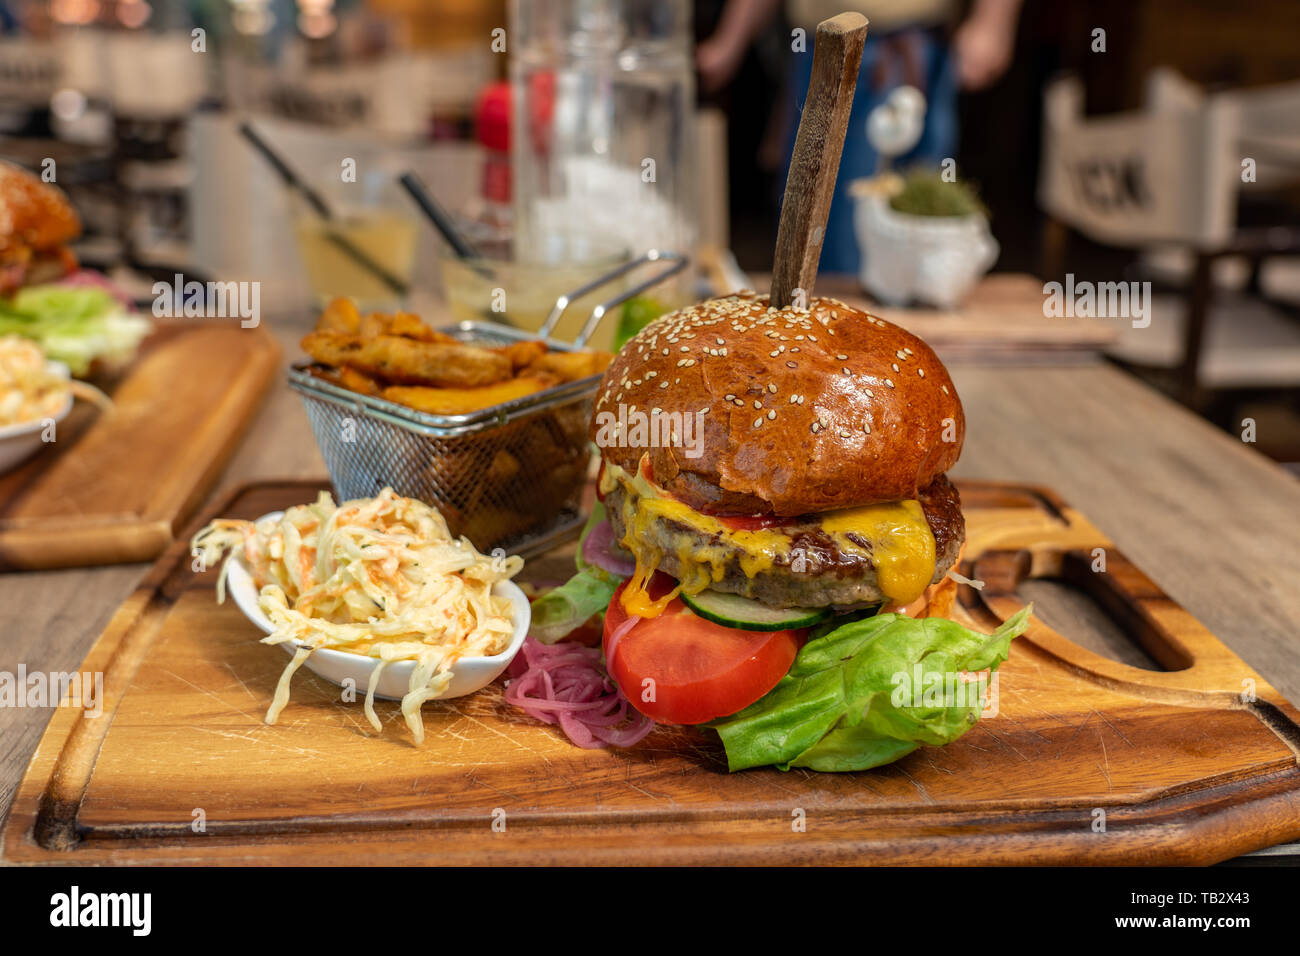 Essen zwei Burger zusammen in einem Restaurant mit Krautsalat und Steak Kartoffel auf einem Brett, das wirkliche Leben kein Studio Bild Stockfoto